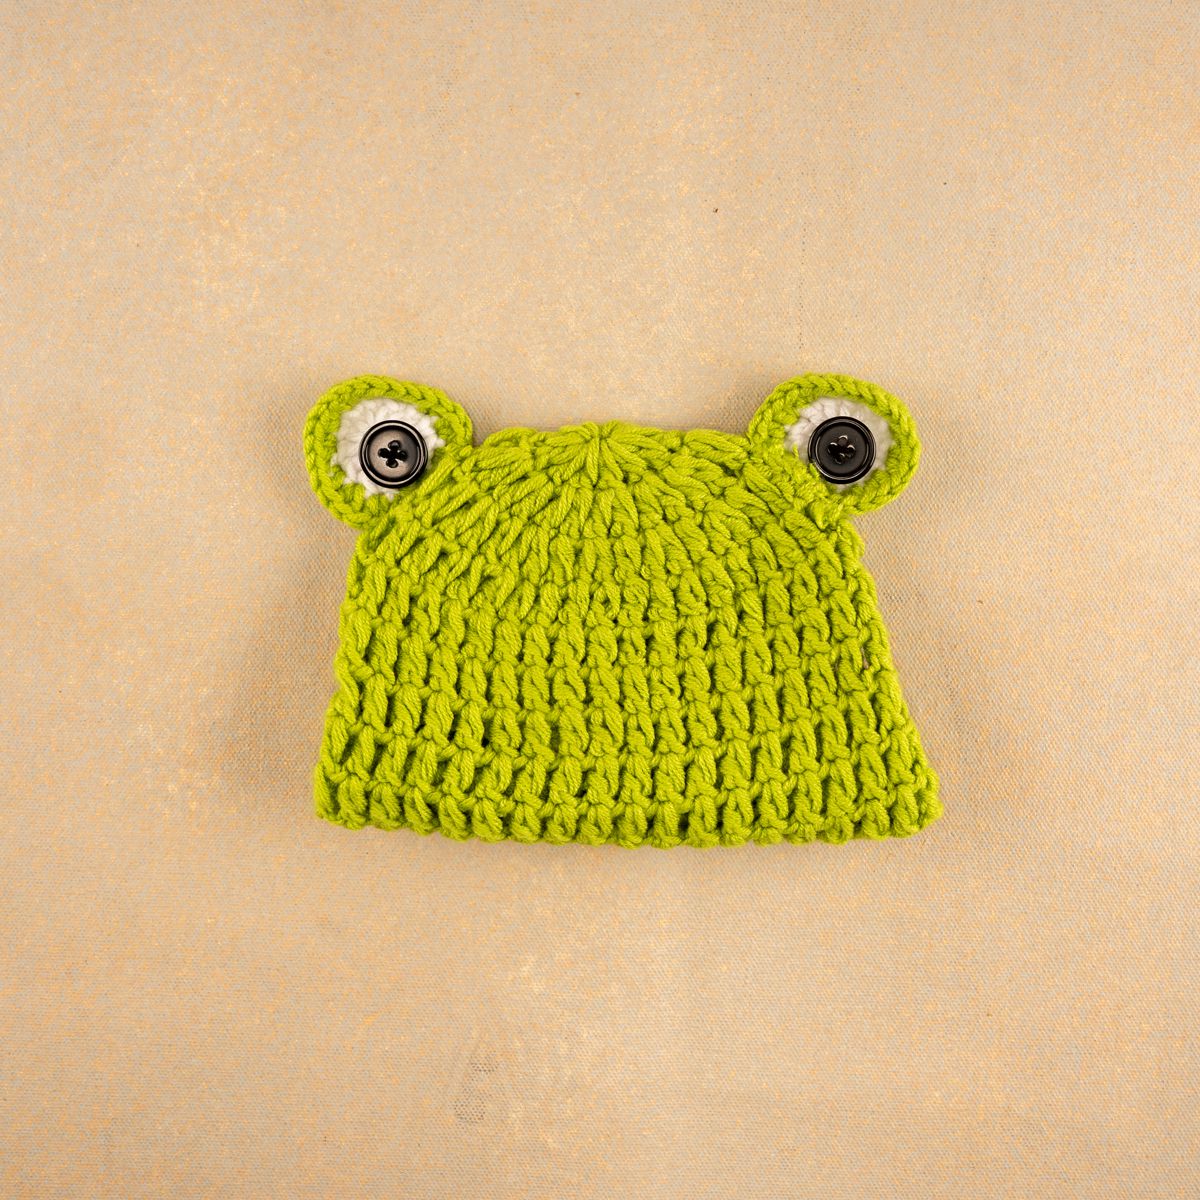 Frog Cap